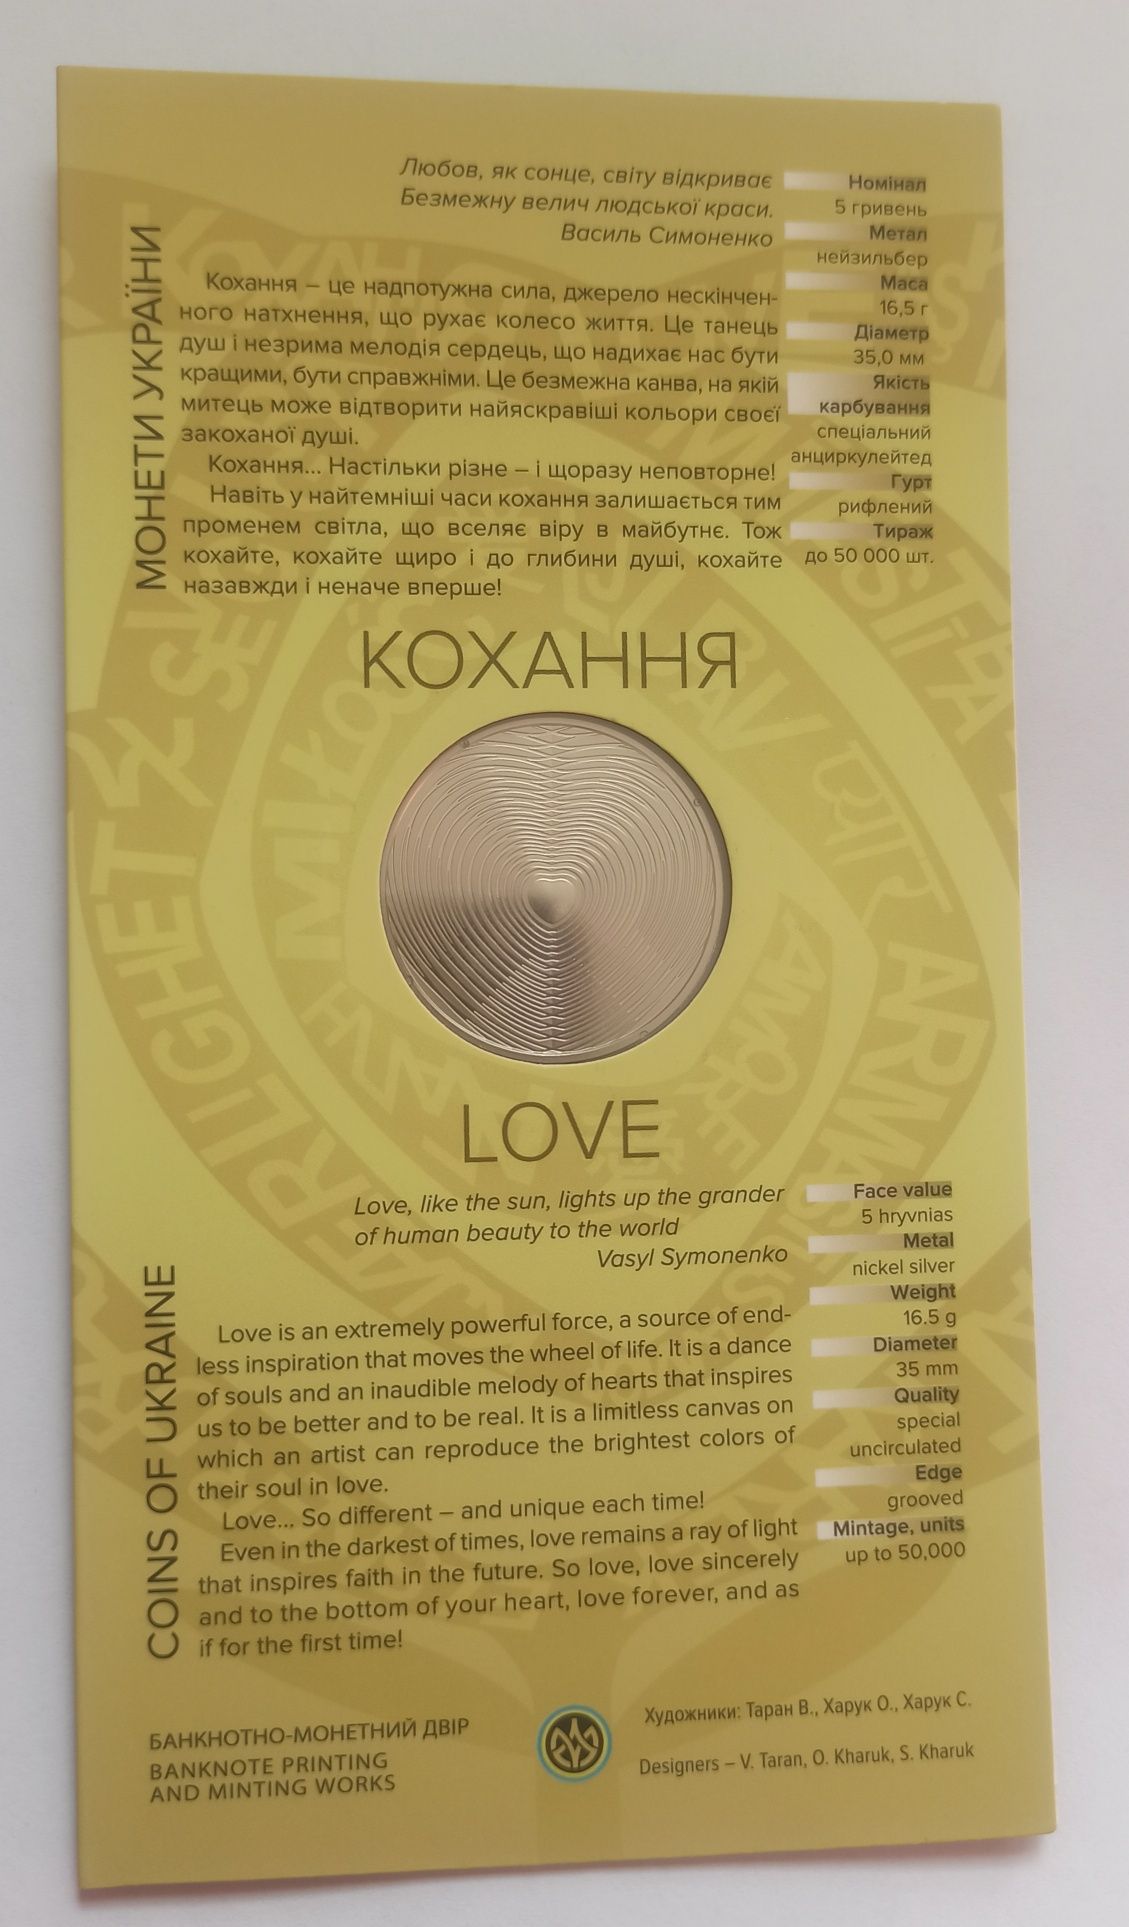 Монета "Кохання" в сувенірній упаковці